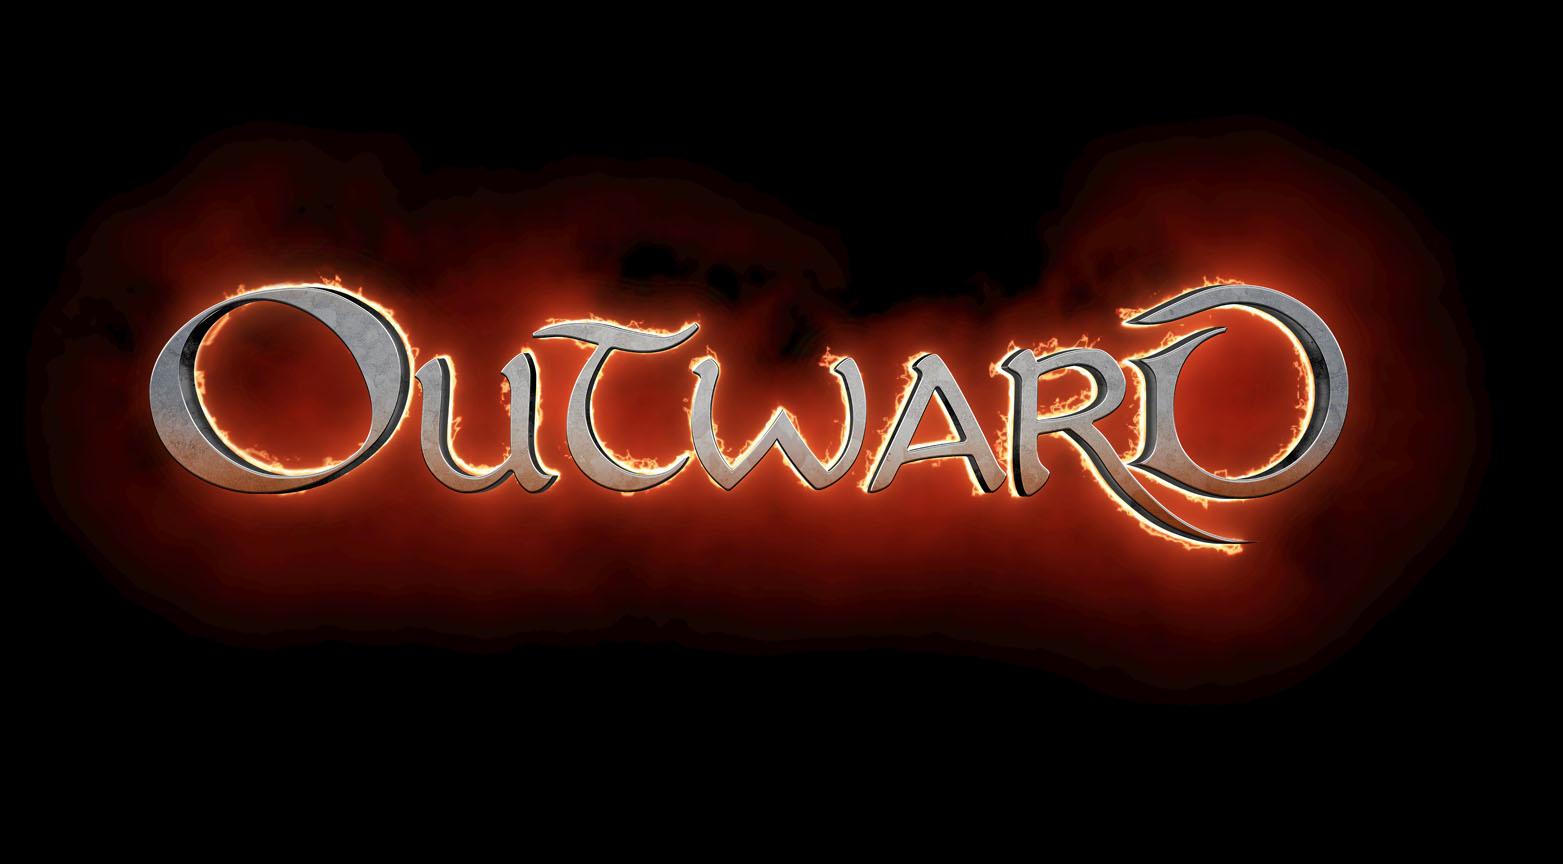 Outward Logo